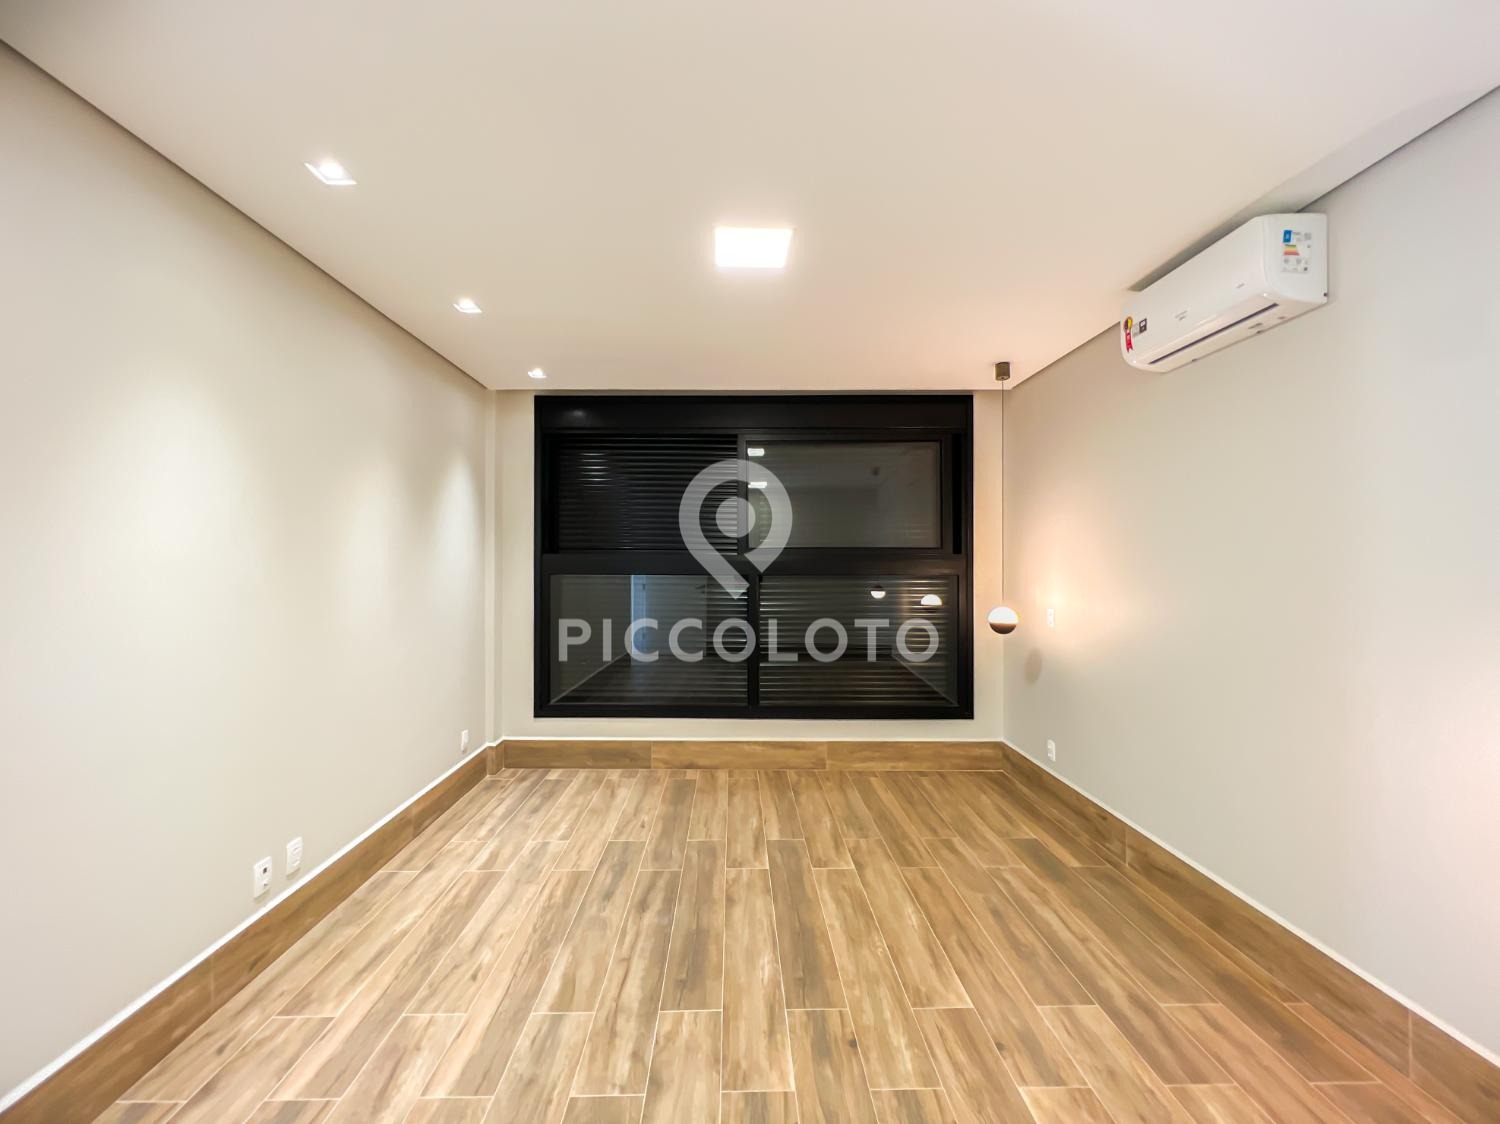 Piccoloto -Casa à venda no Alphaville Dom Pedro 3 em Campinas